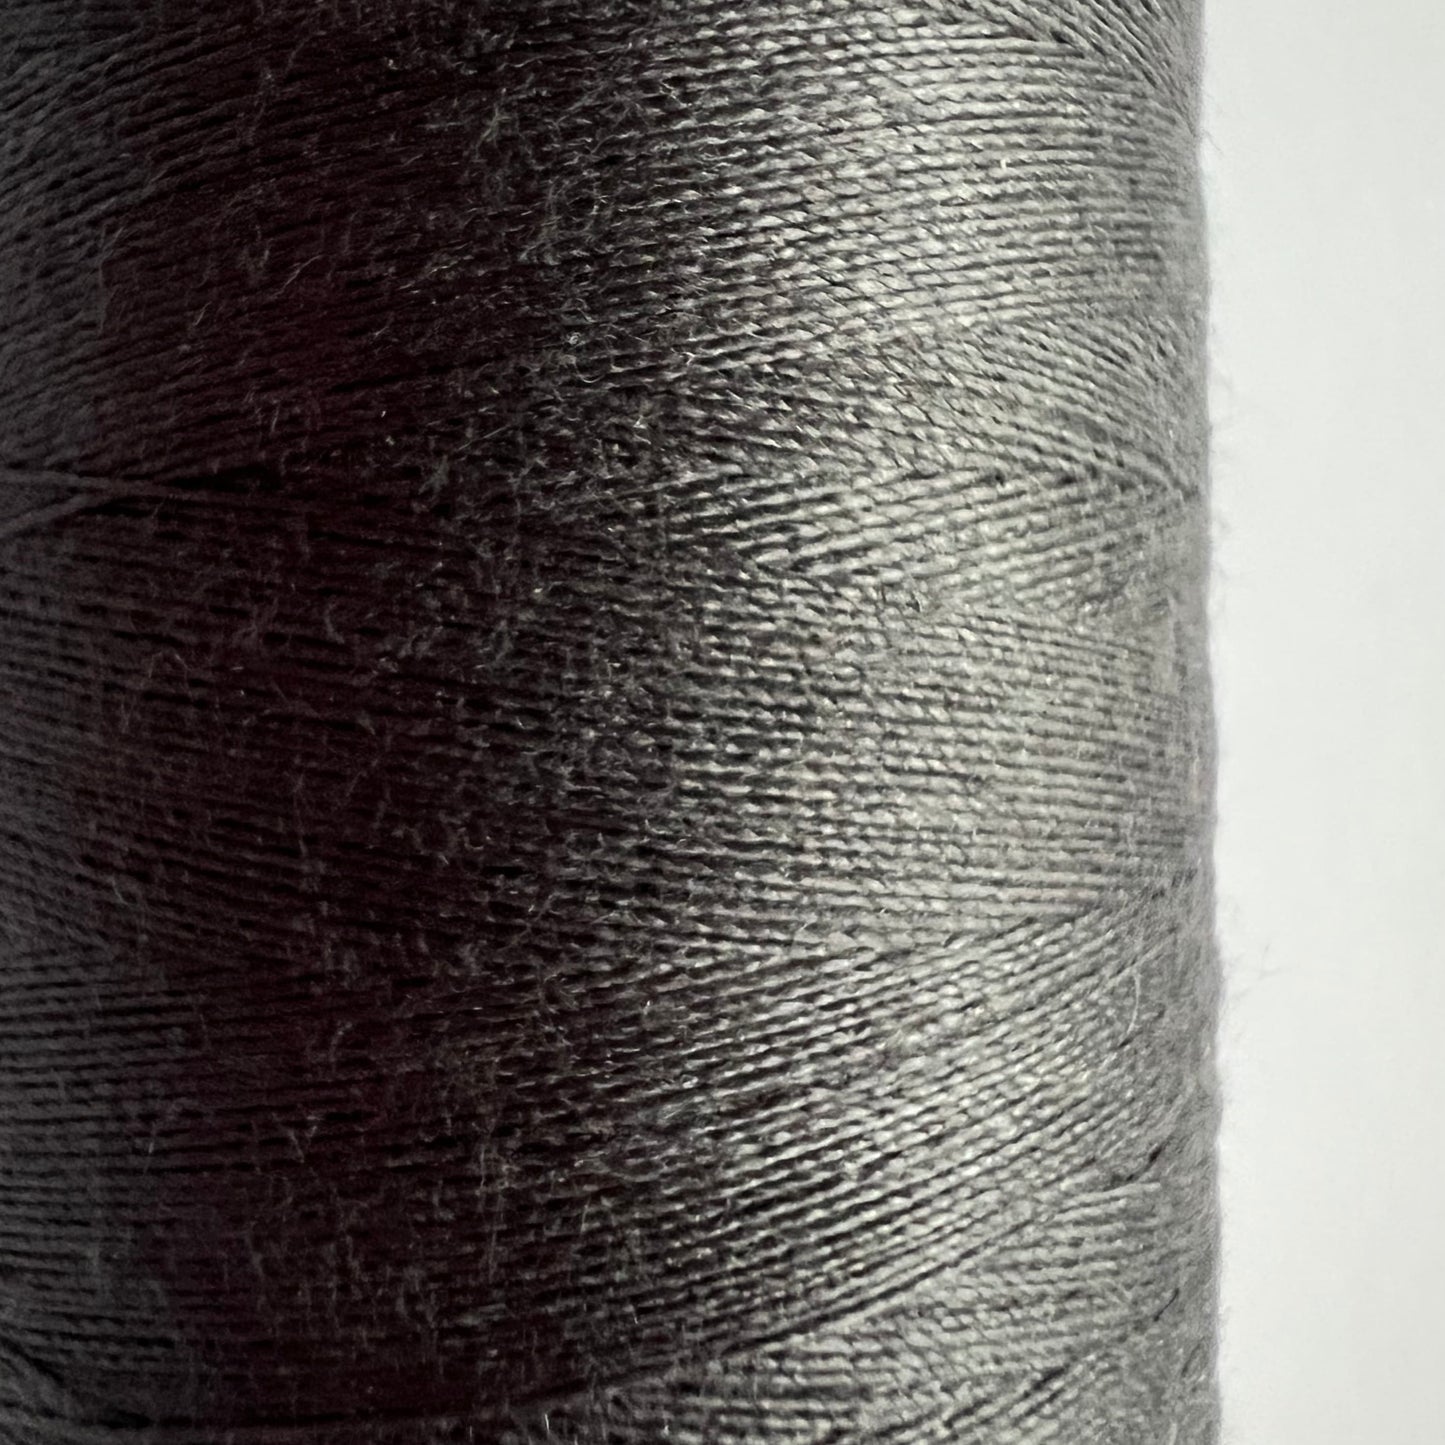 Grey Polyester Sewing Thread - 1000 Yard Spools